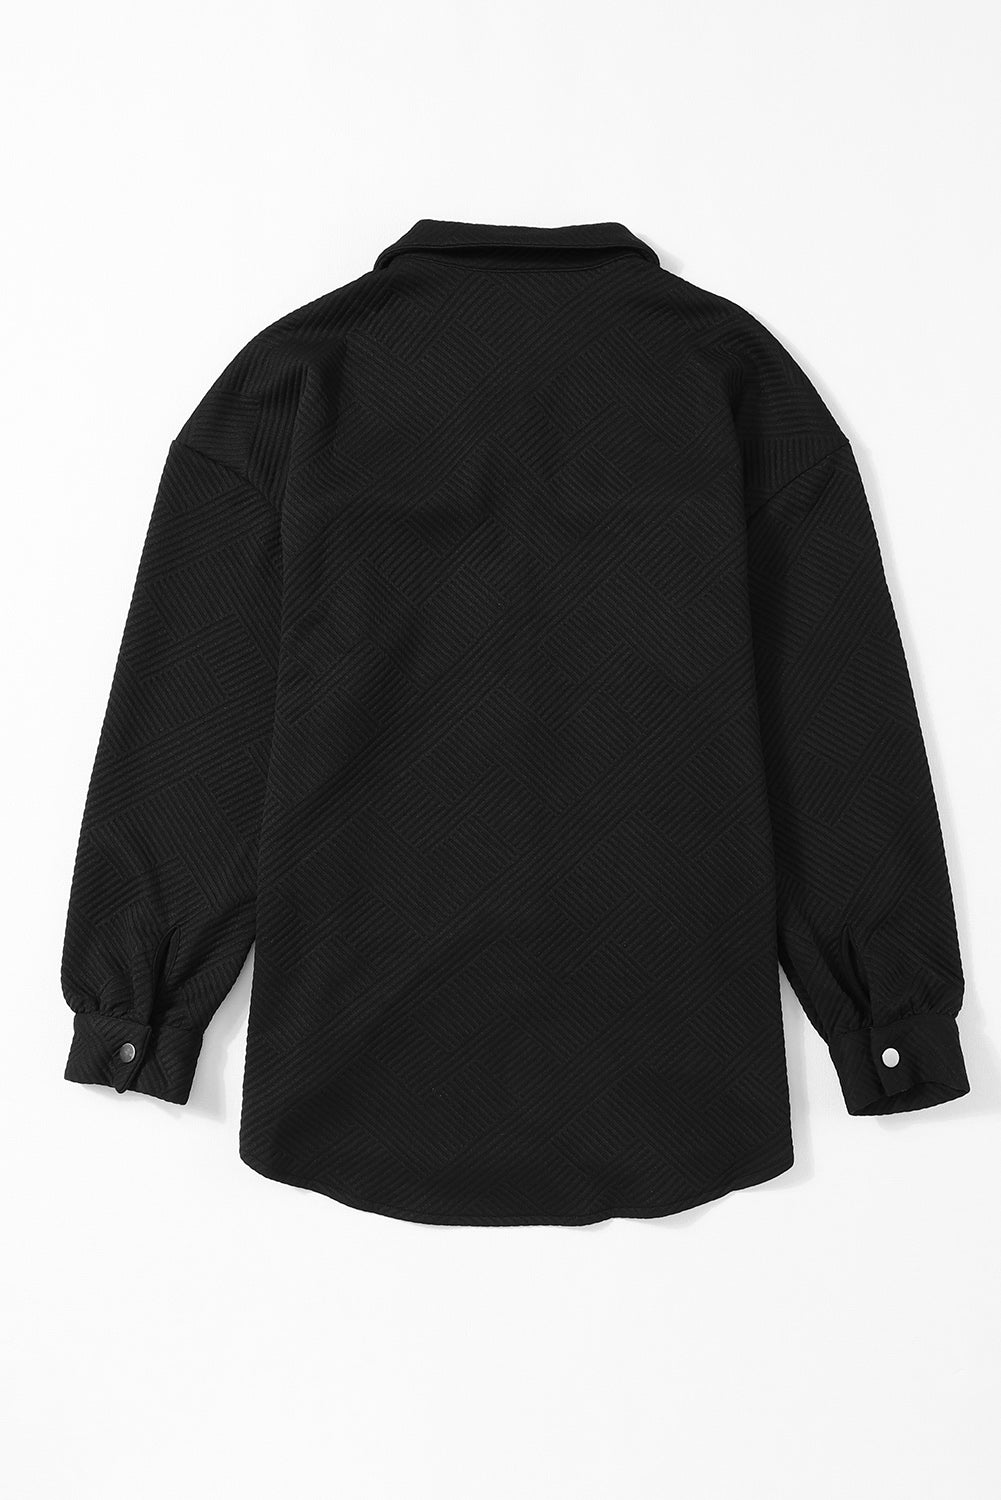 Črna enobarvna jakna z žepom in gumbi